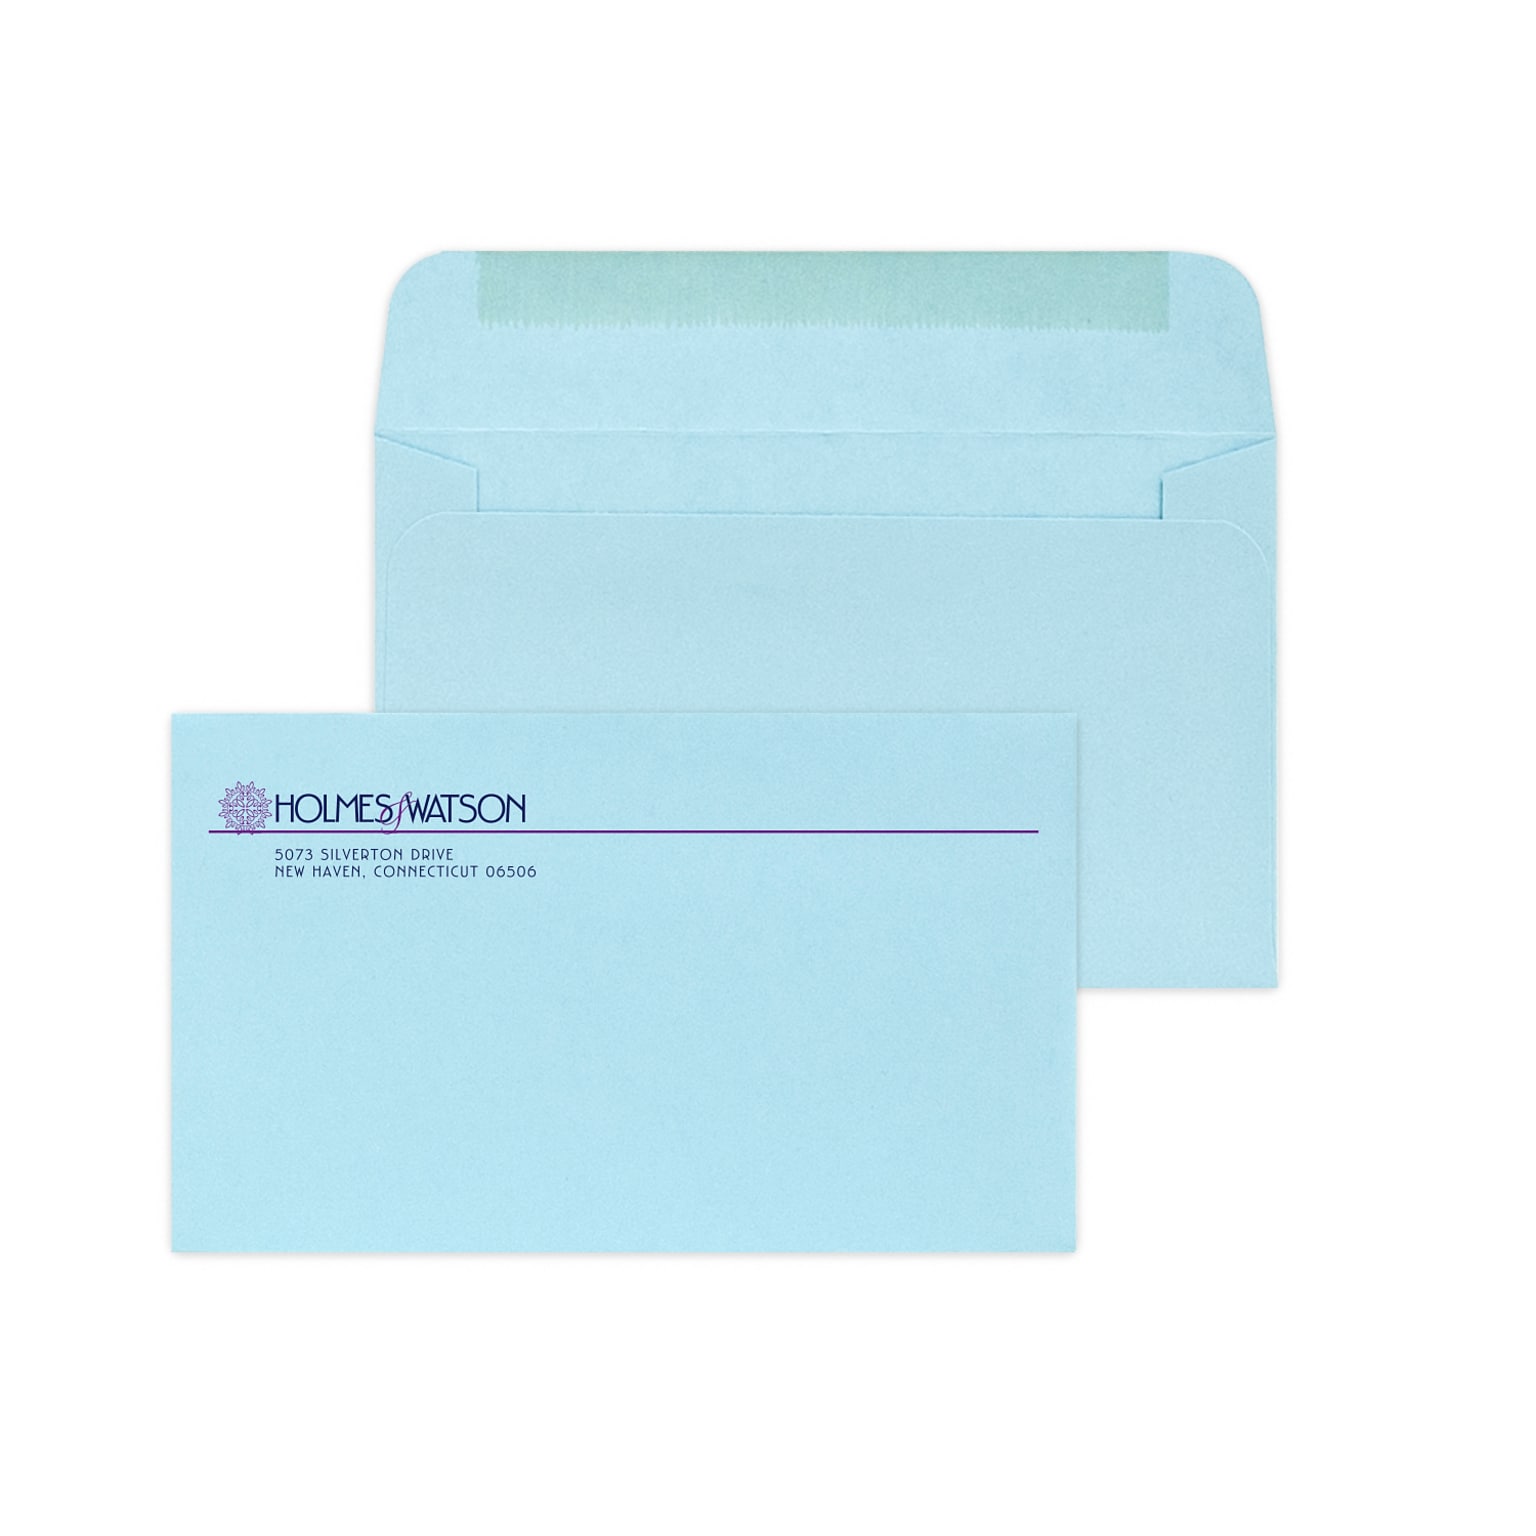 Custom #6-1/4 Standard Envelopes, 3 1/2 x 6, 24# Blue Wove, 2 Custom Inks, 250 / Pack